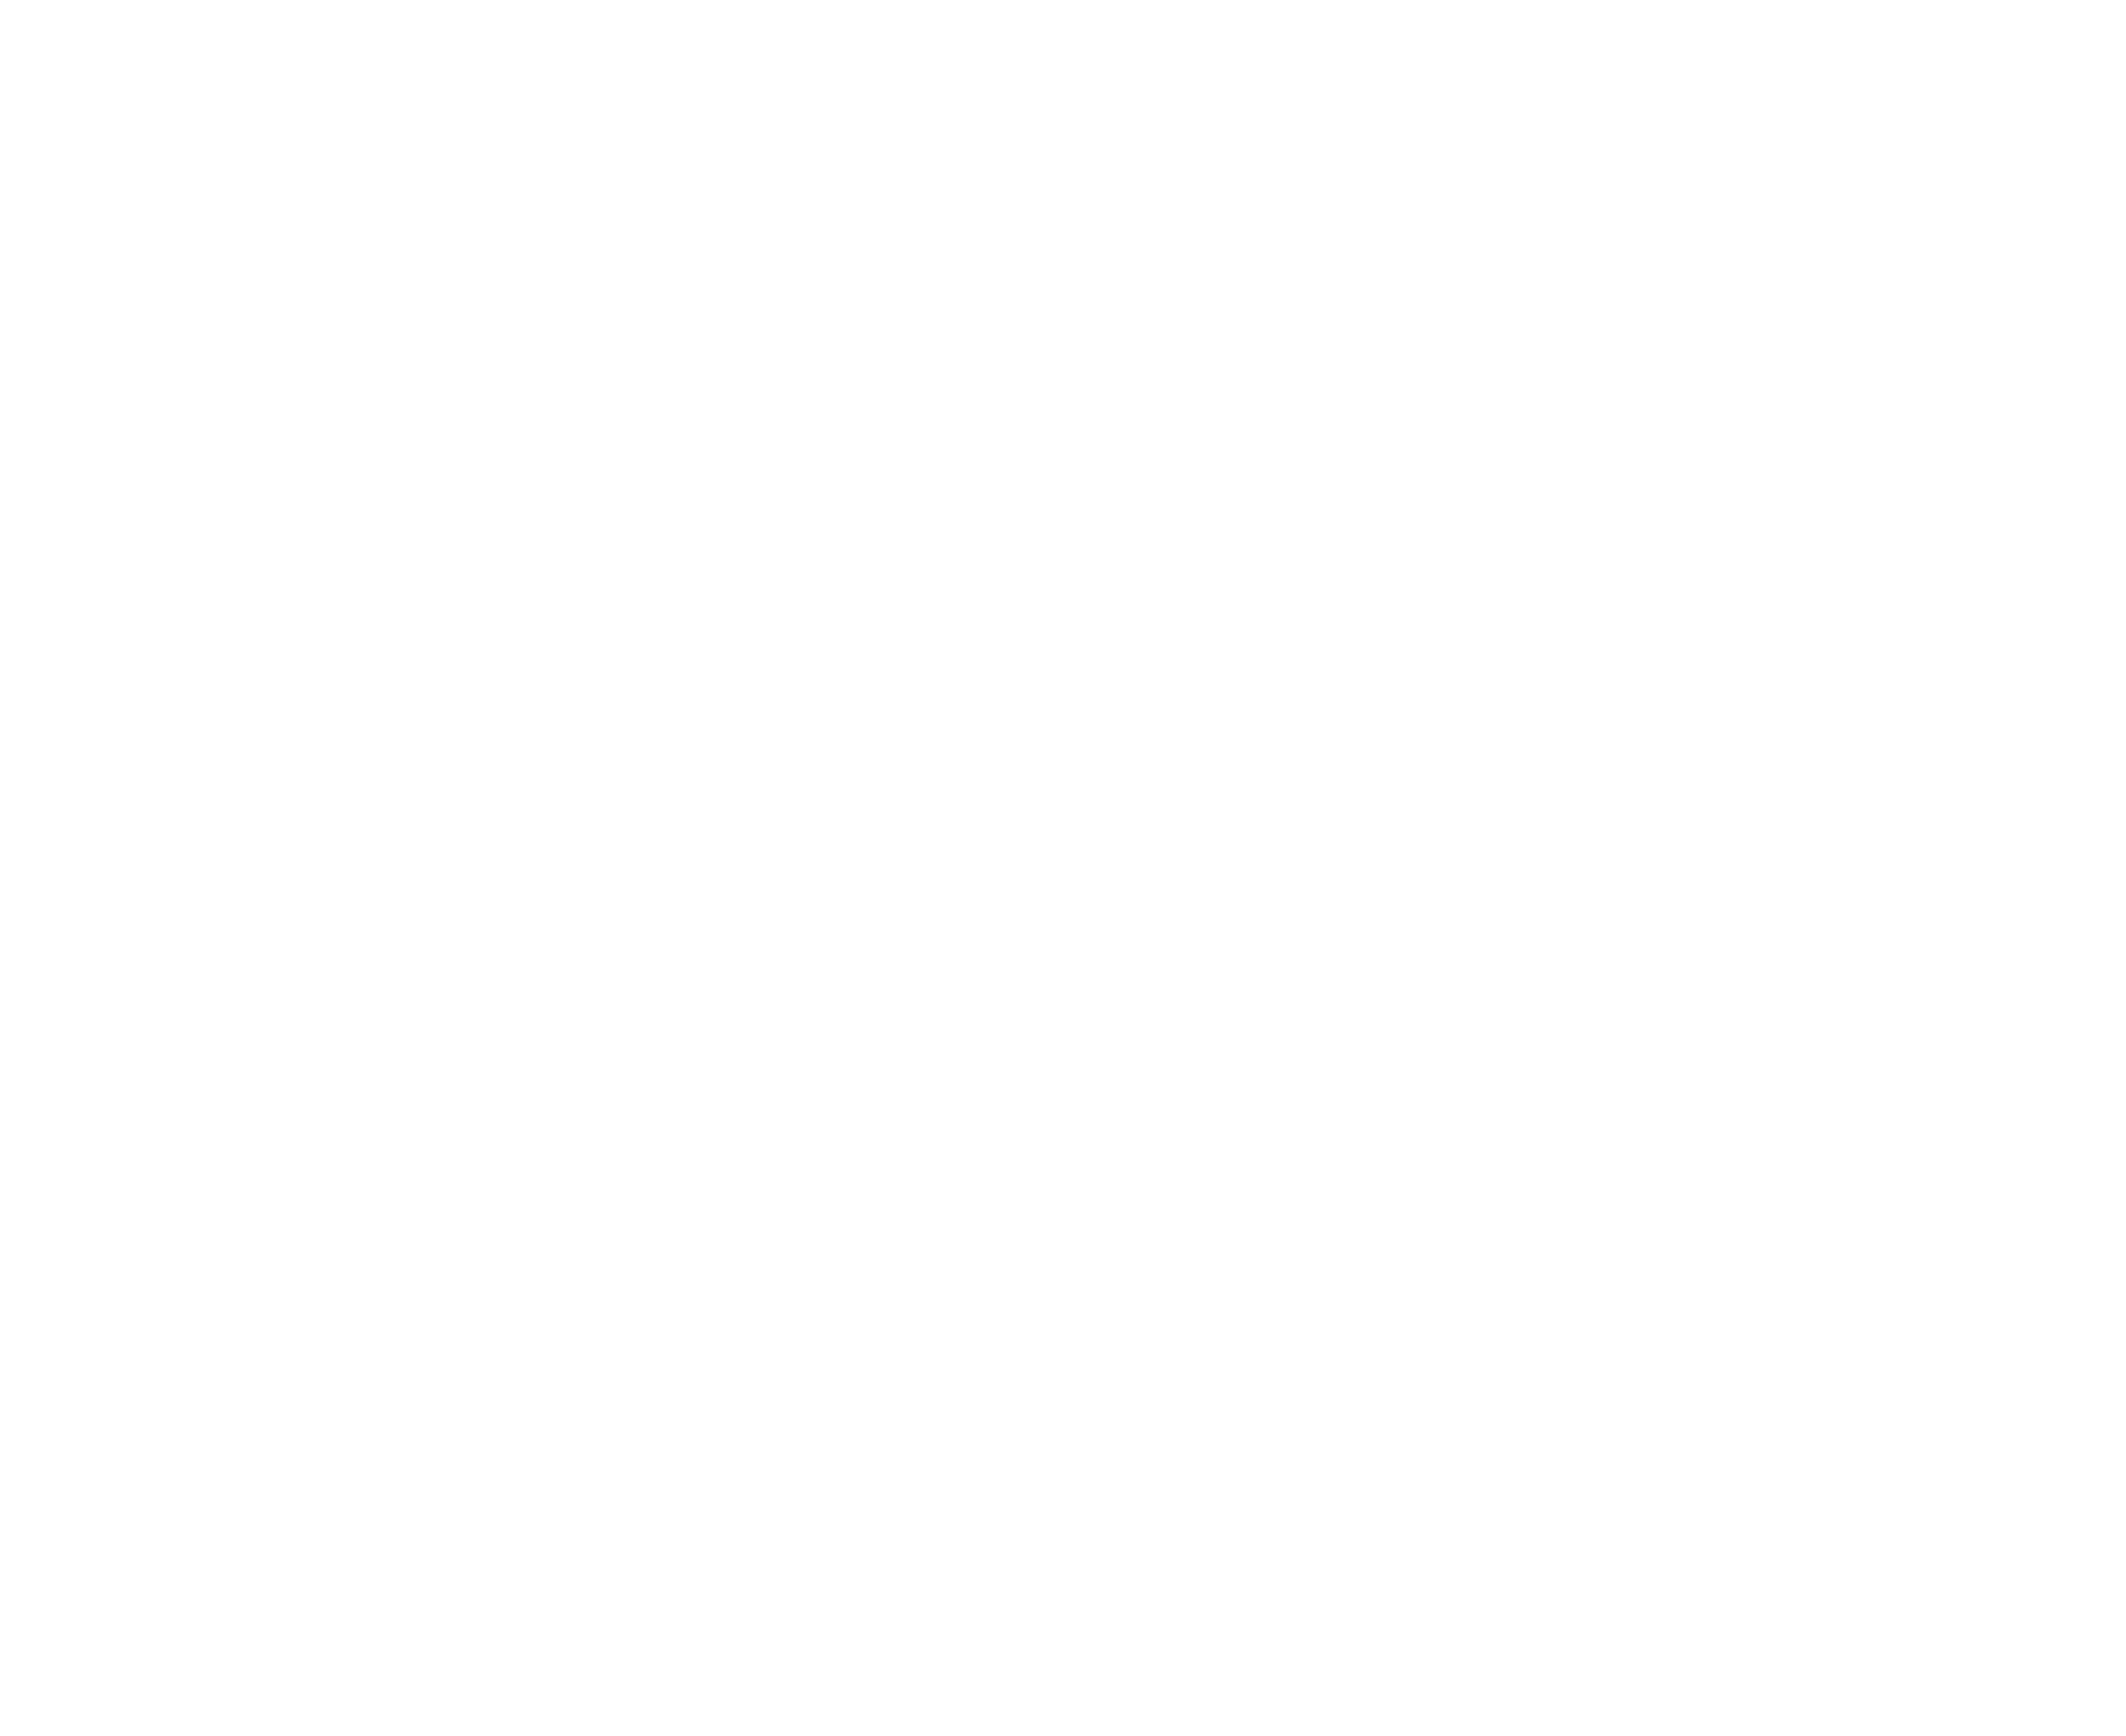 H-DC German Harley Riders